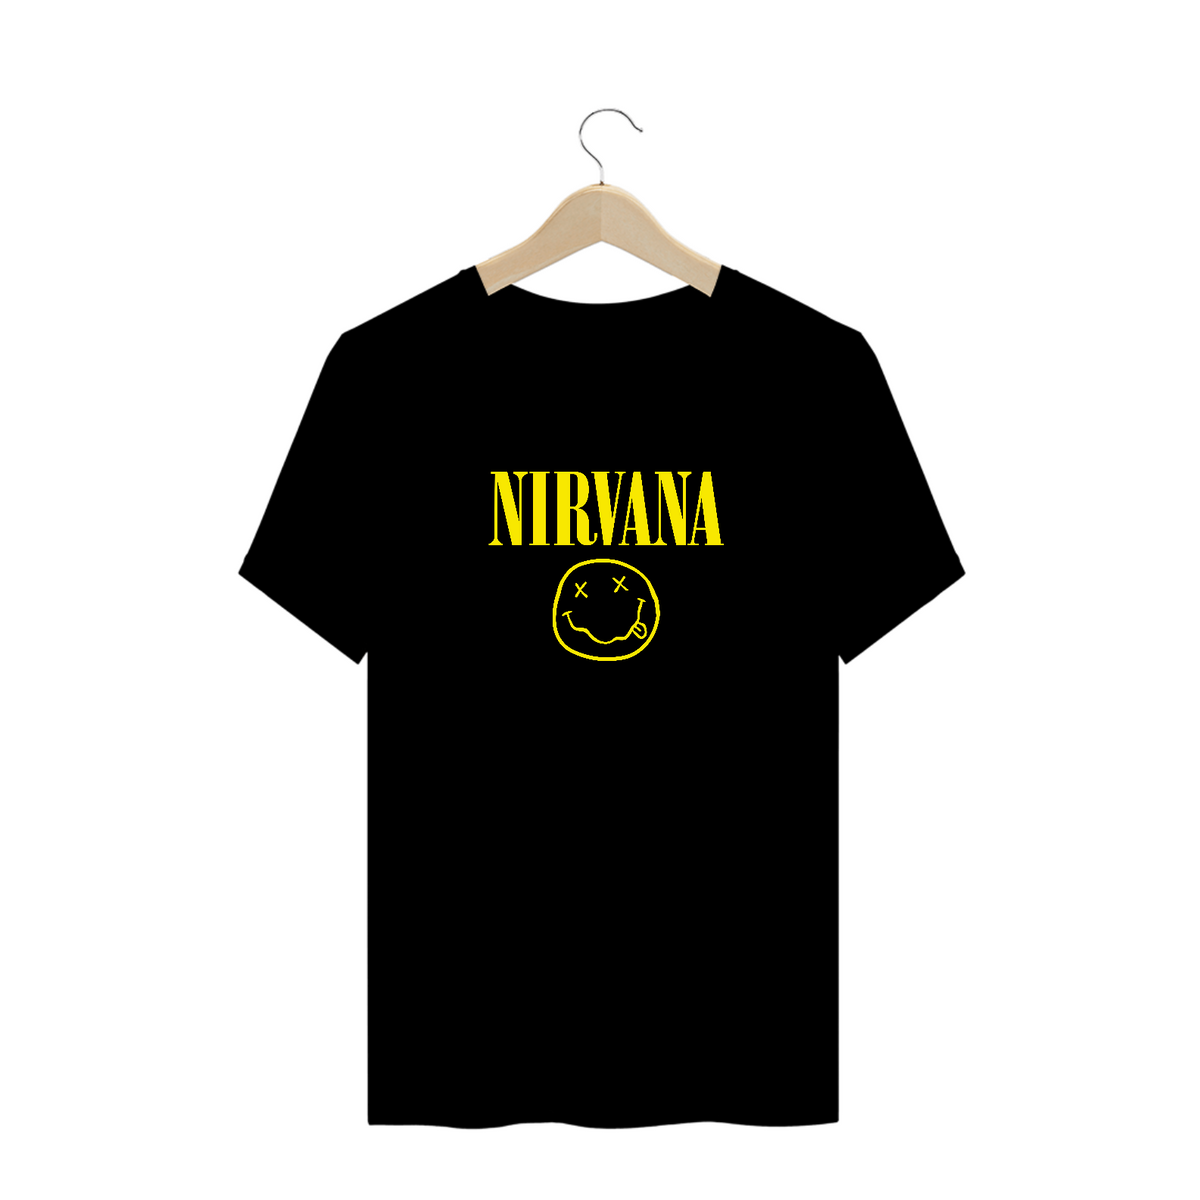 Nome do produto: Camiseta Plus Size Nirvana Smile